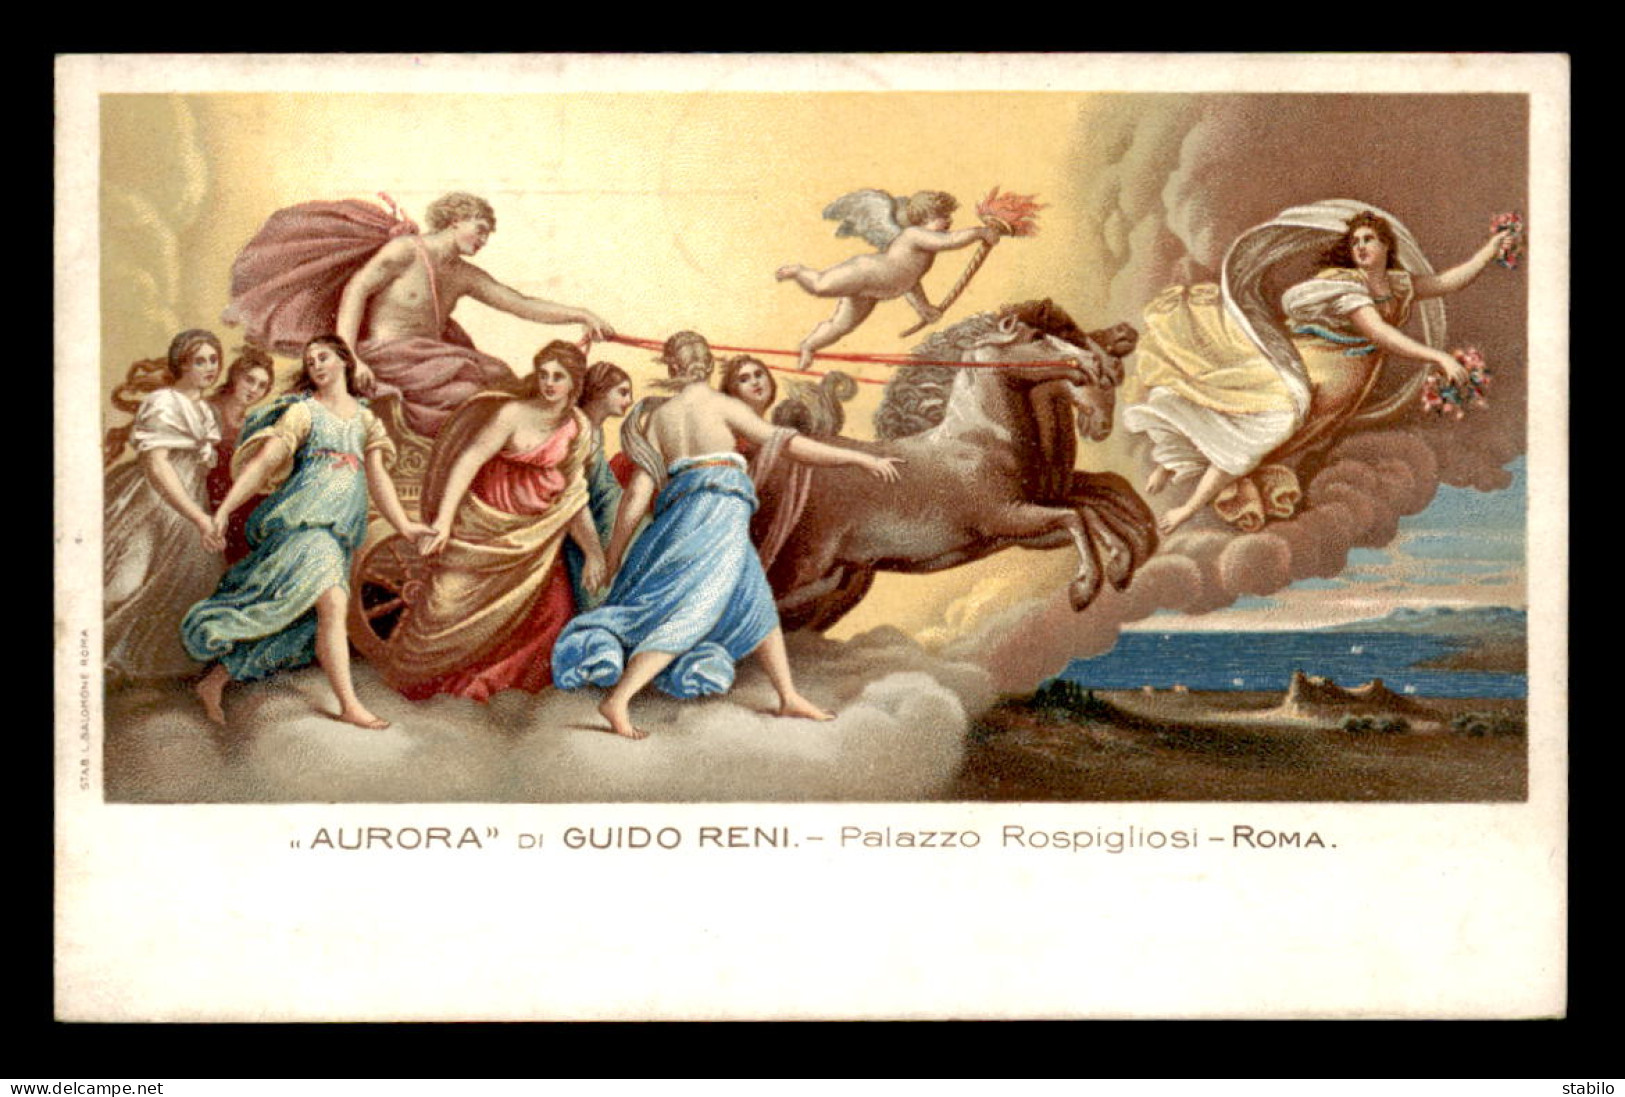 ITALIE - ROMA - PALAZZO ROSPIGLIOSI - AURORA, DI GUIDO RENI - Museos